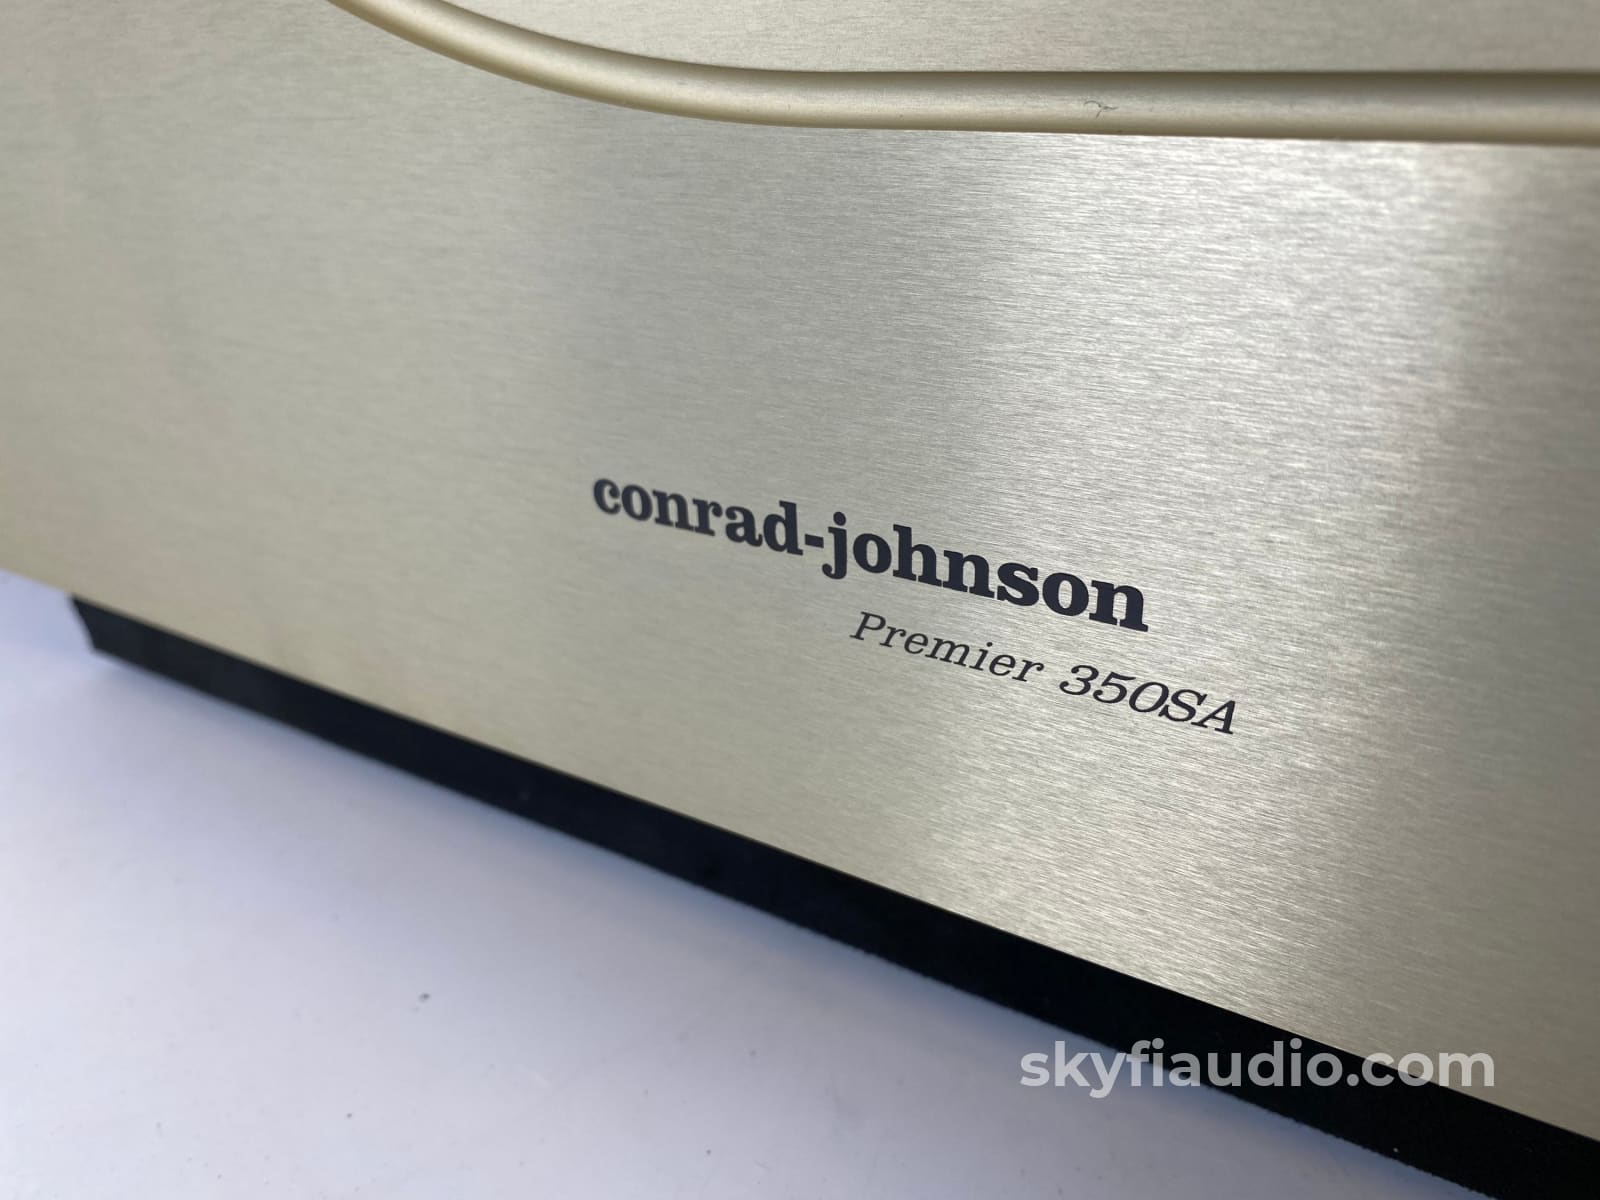 Conrad Johnson Premier 350Sa Solid State Amplifier 350 Watts!